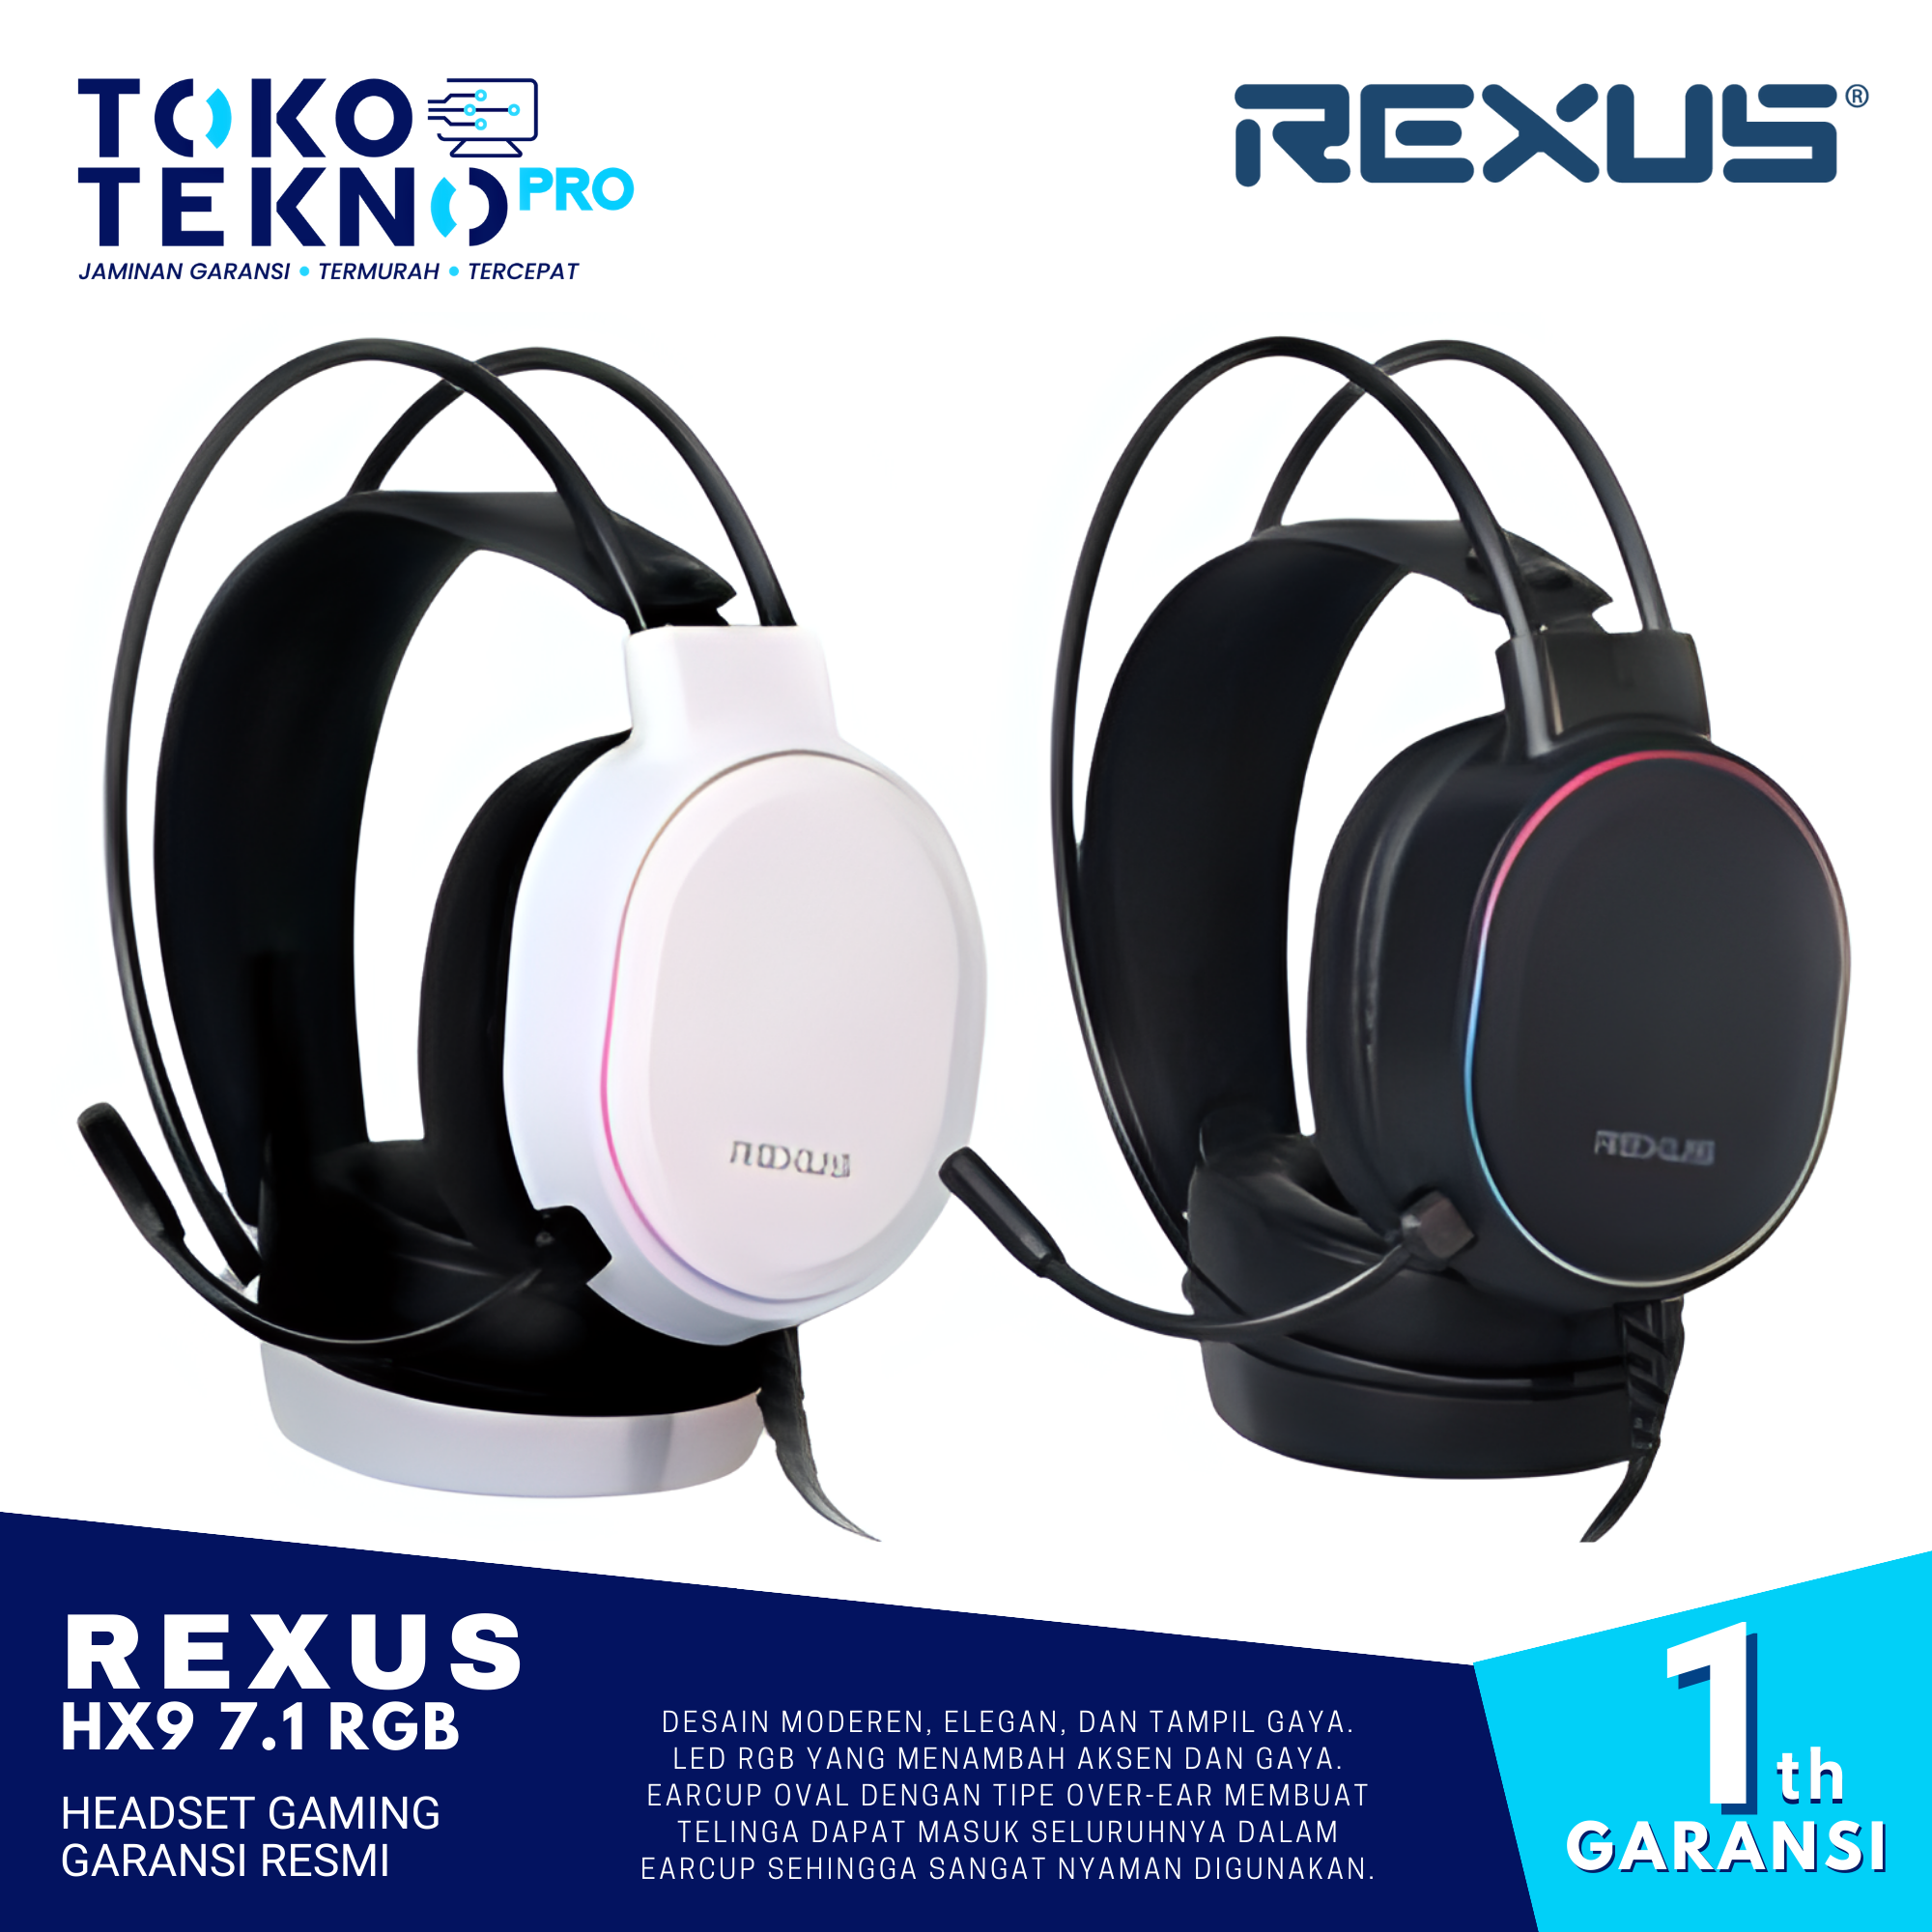 Rexus HX9 7.1 RGB Headset Gaming